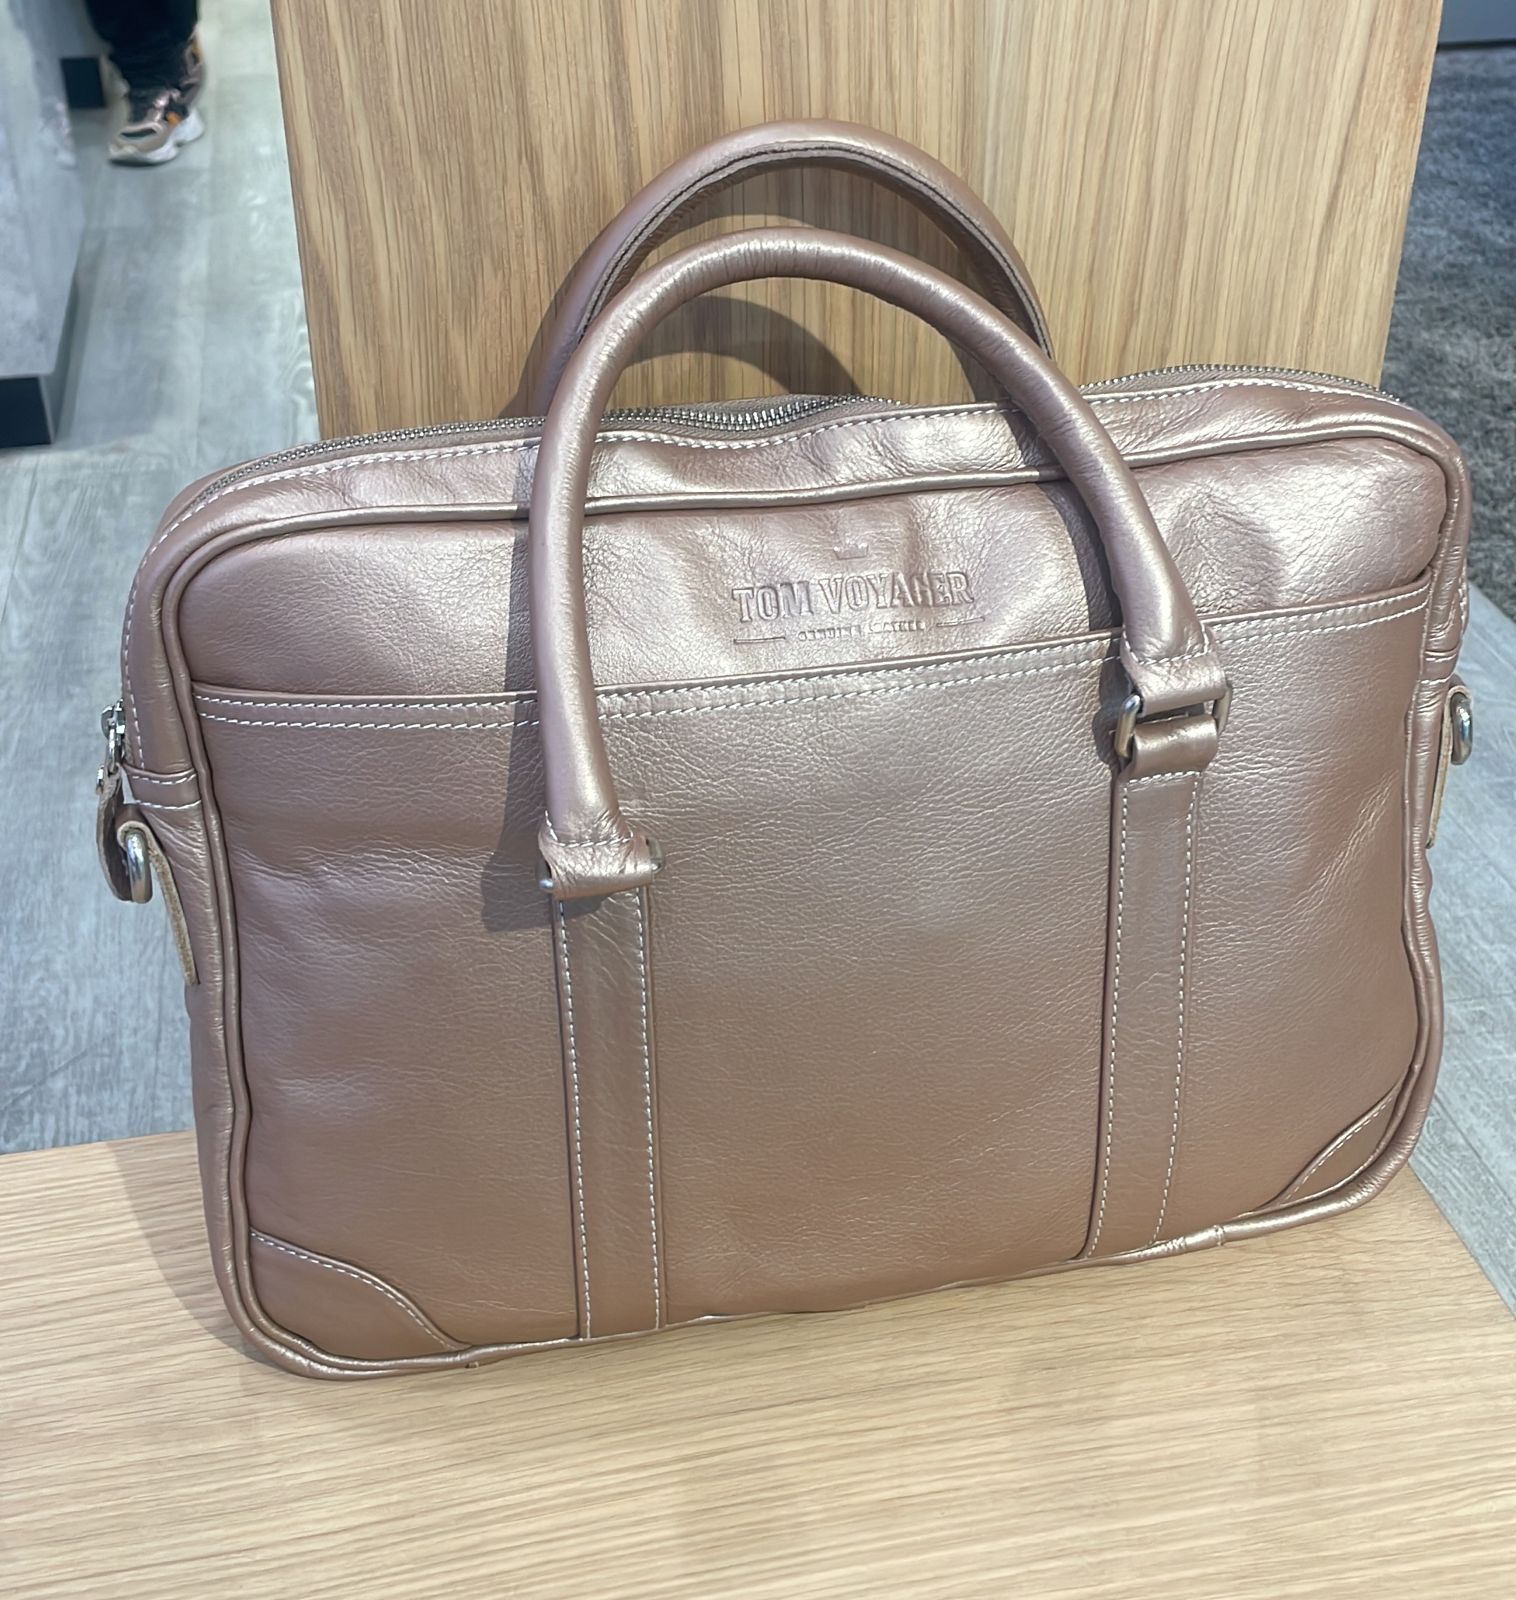 Hayden Leather Bag - Silver Pink